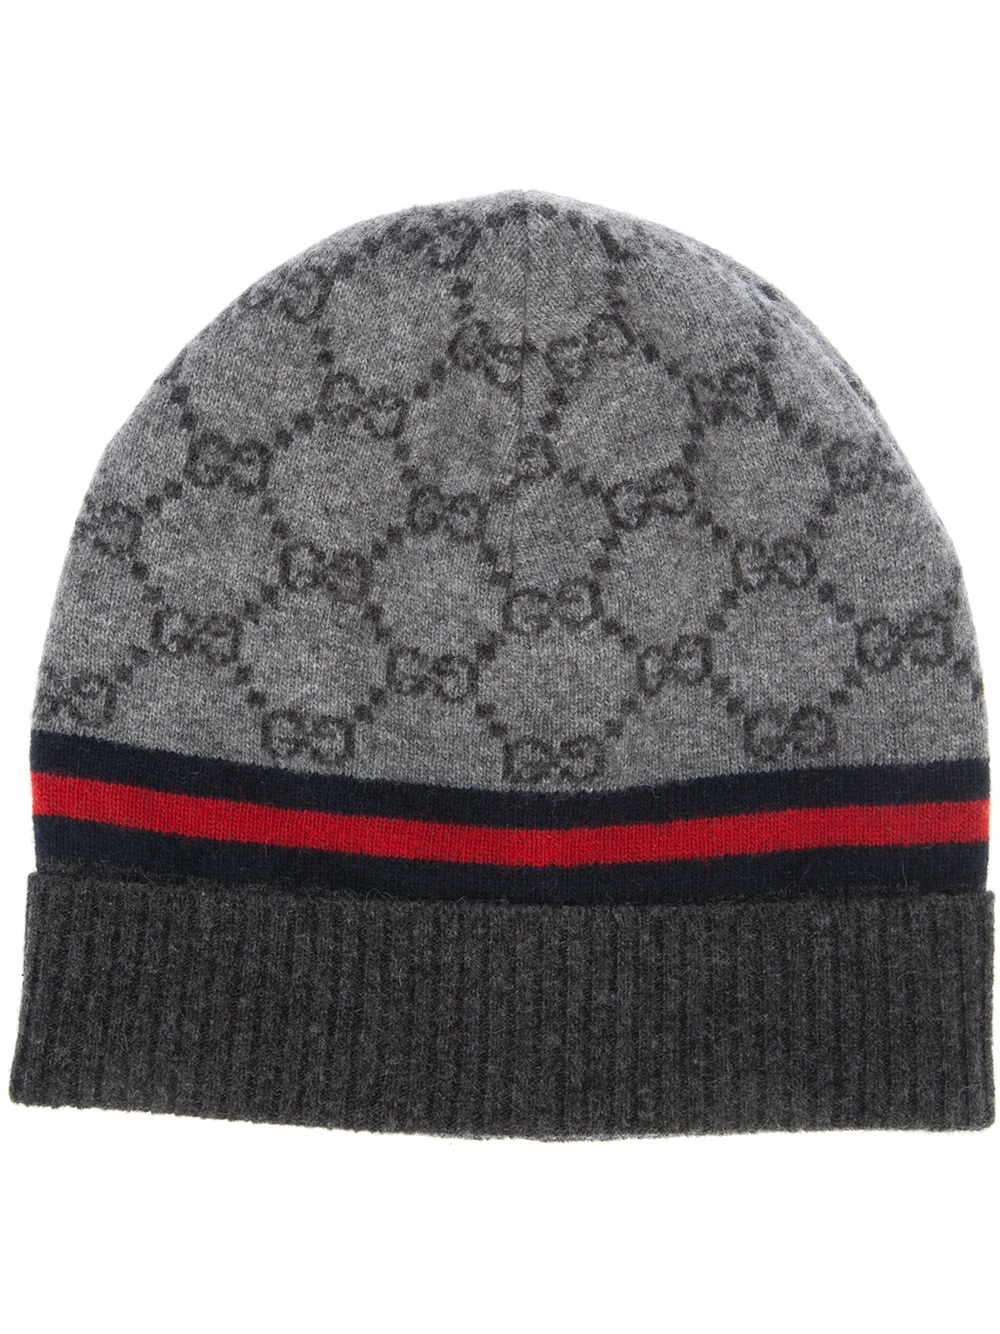 Gucci Monogram Beanie Hat in Gray | Lyst